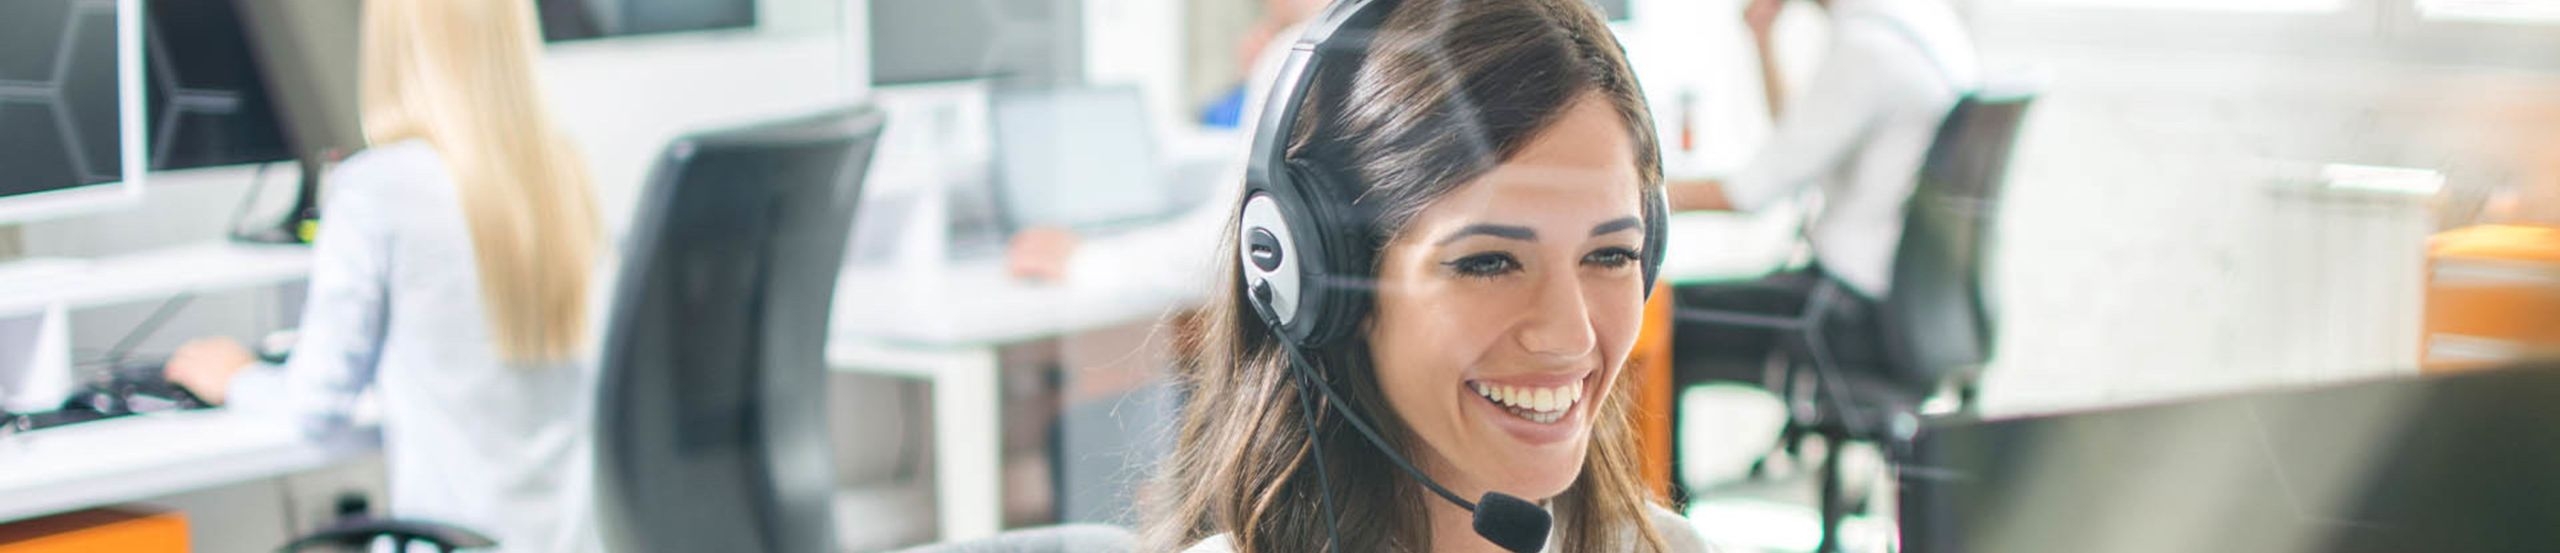 Lächelnde Frau sitzt im Büro an einem Computer und telefoniert via Headset